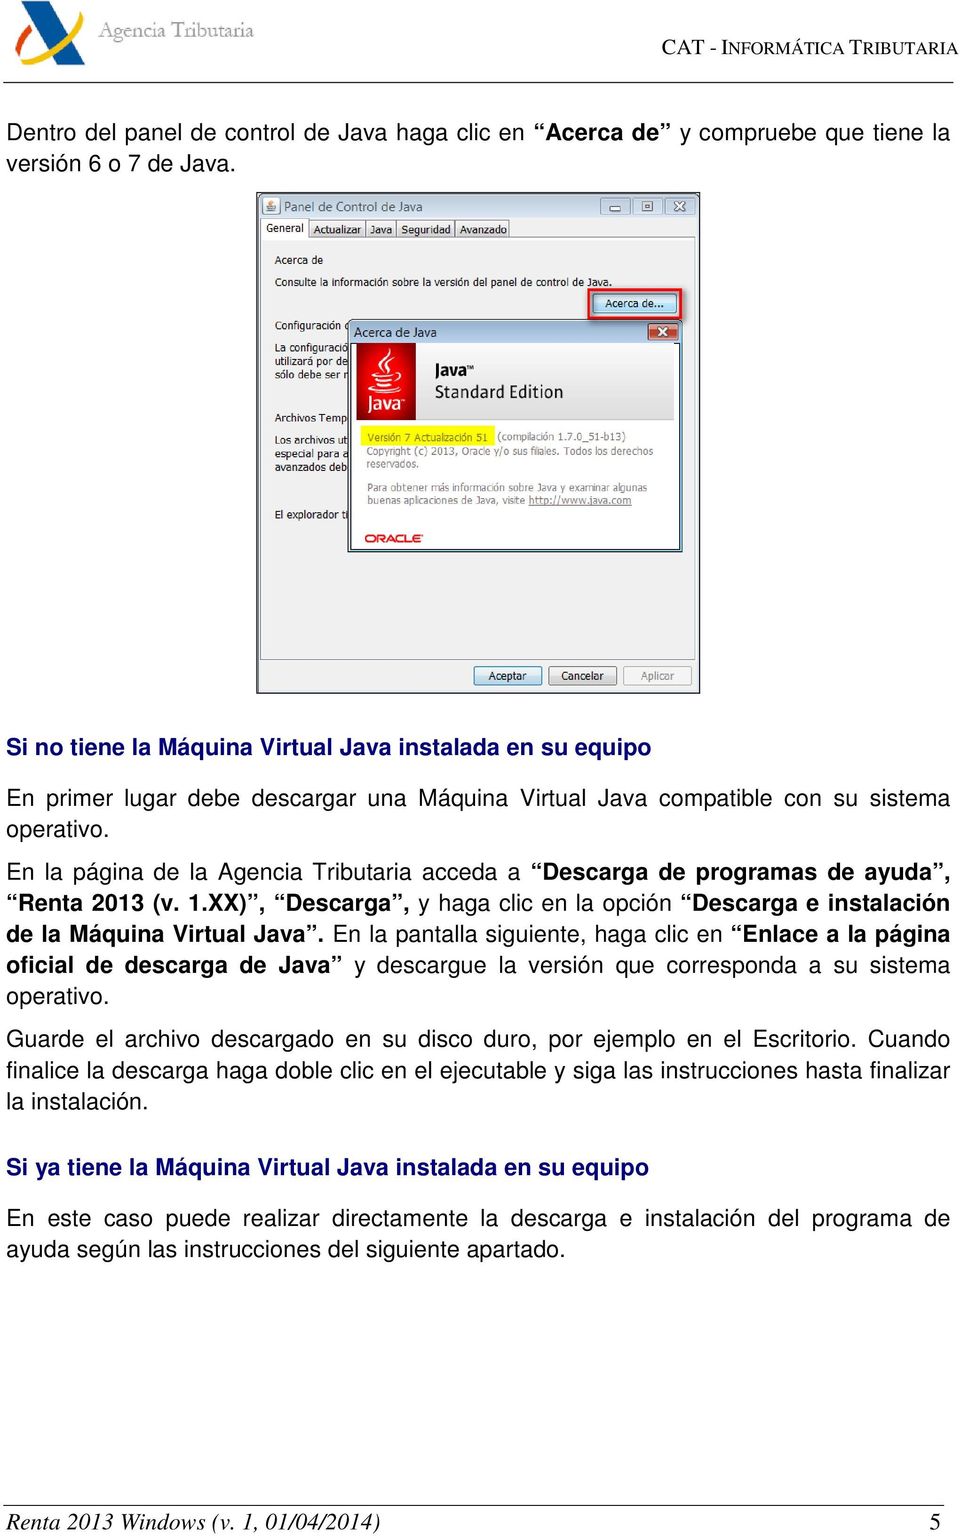 En la página de la Agencia Tributaria acceda a Descarga de programas de ayuda, Renta 2013 (v. 1.XX), Descarga, y haga clic en la opción Descarga e instalación de la Máquina Virtual Java.